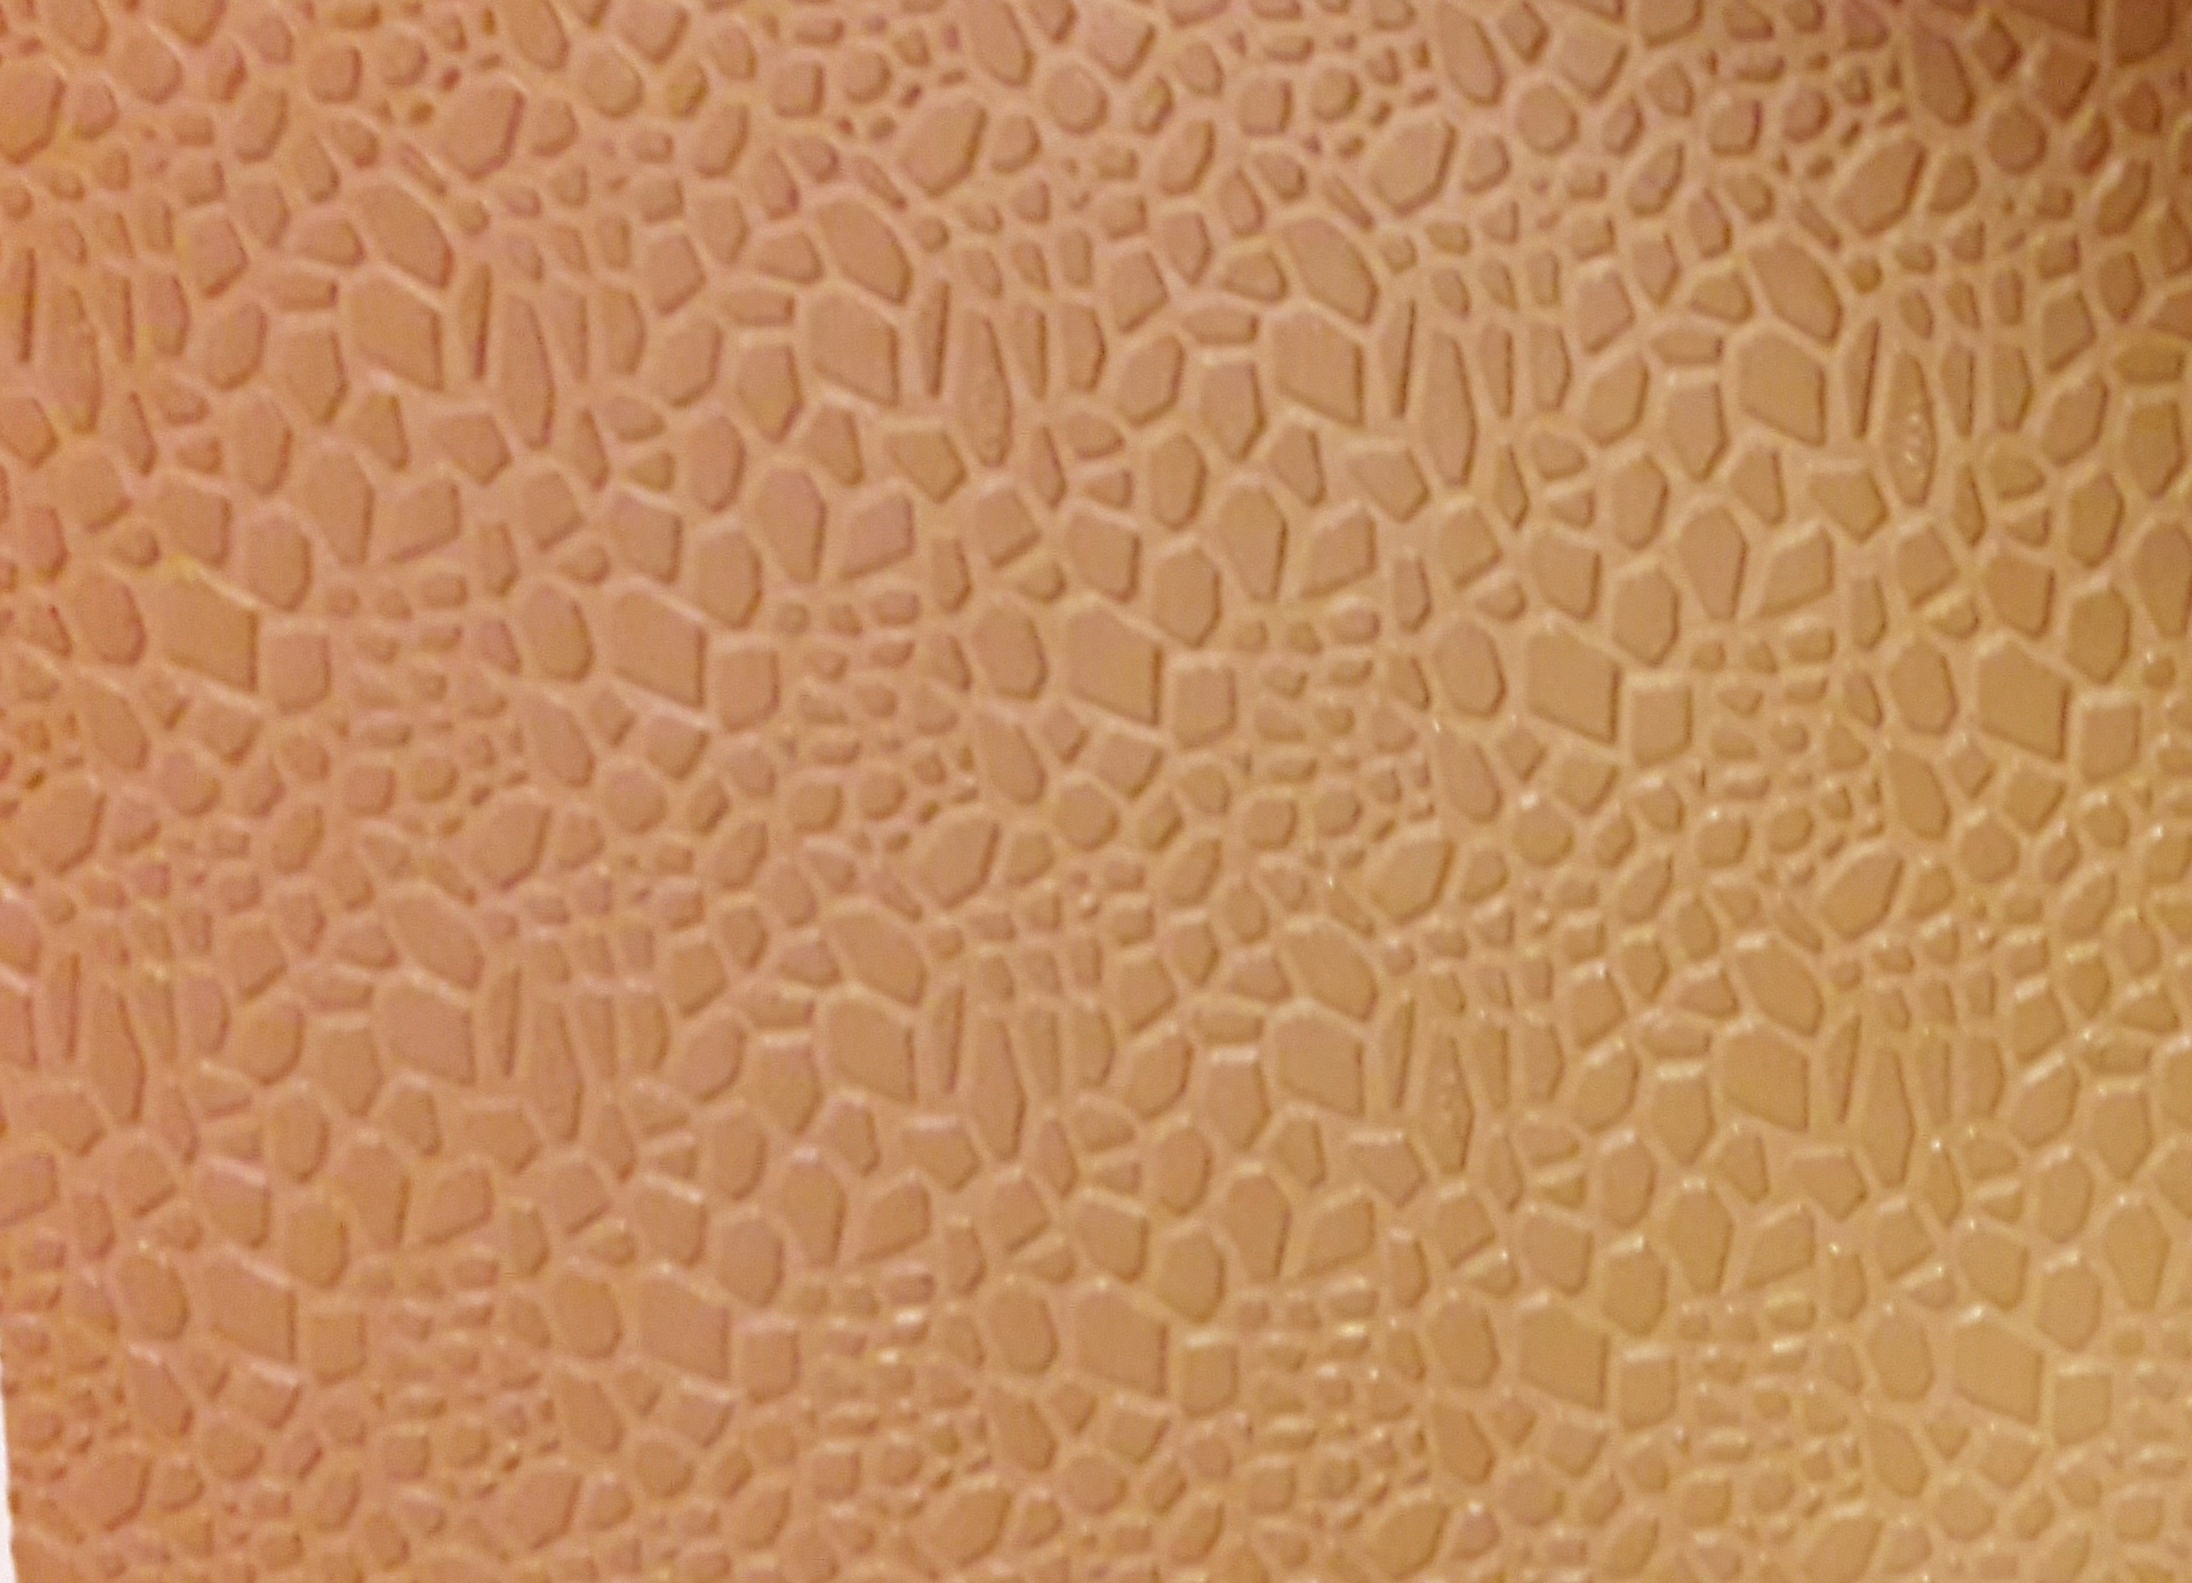 Mozaika 6 mm obuvnická plotna béžová, guma, podrážka, pryž